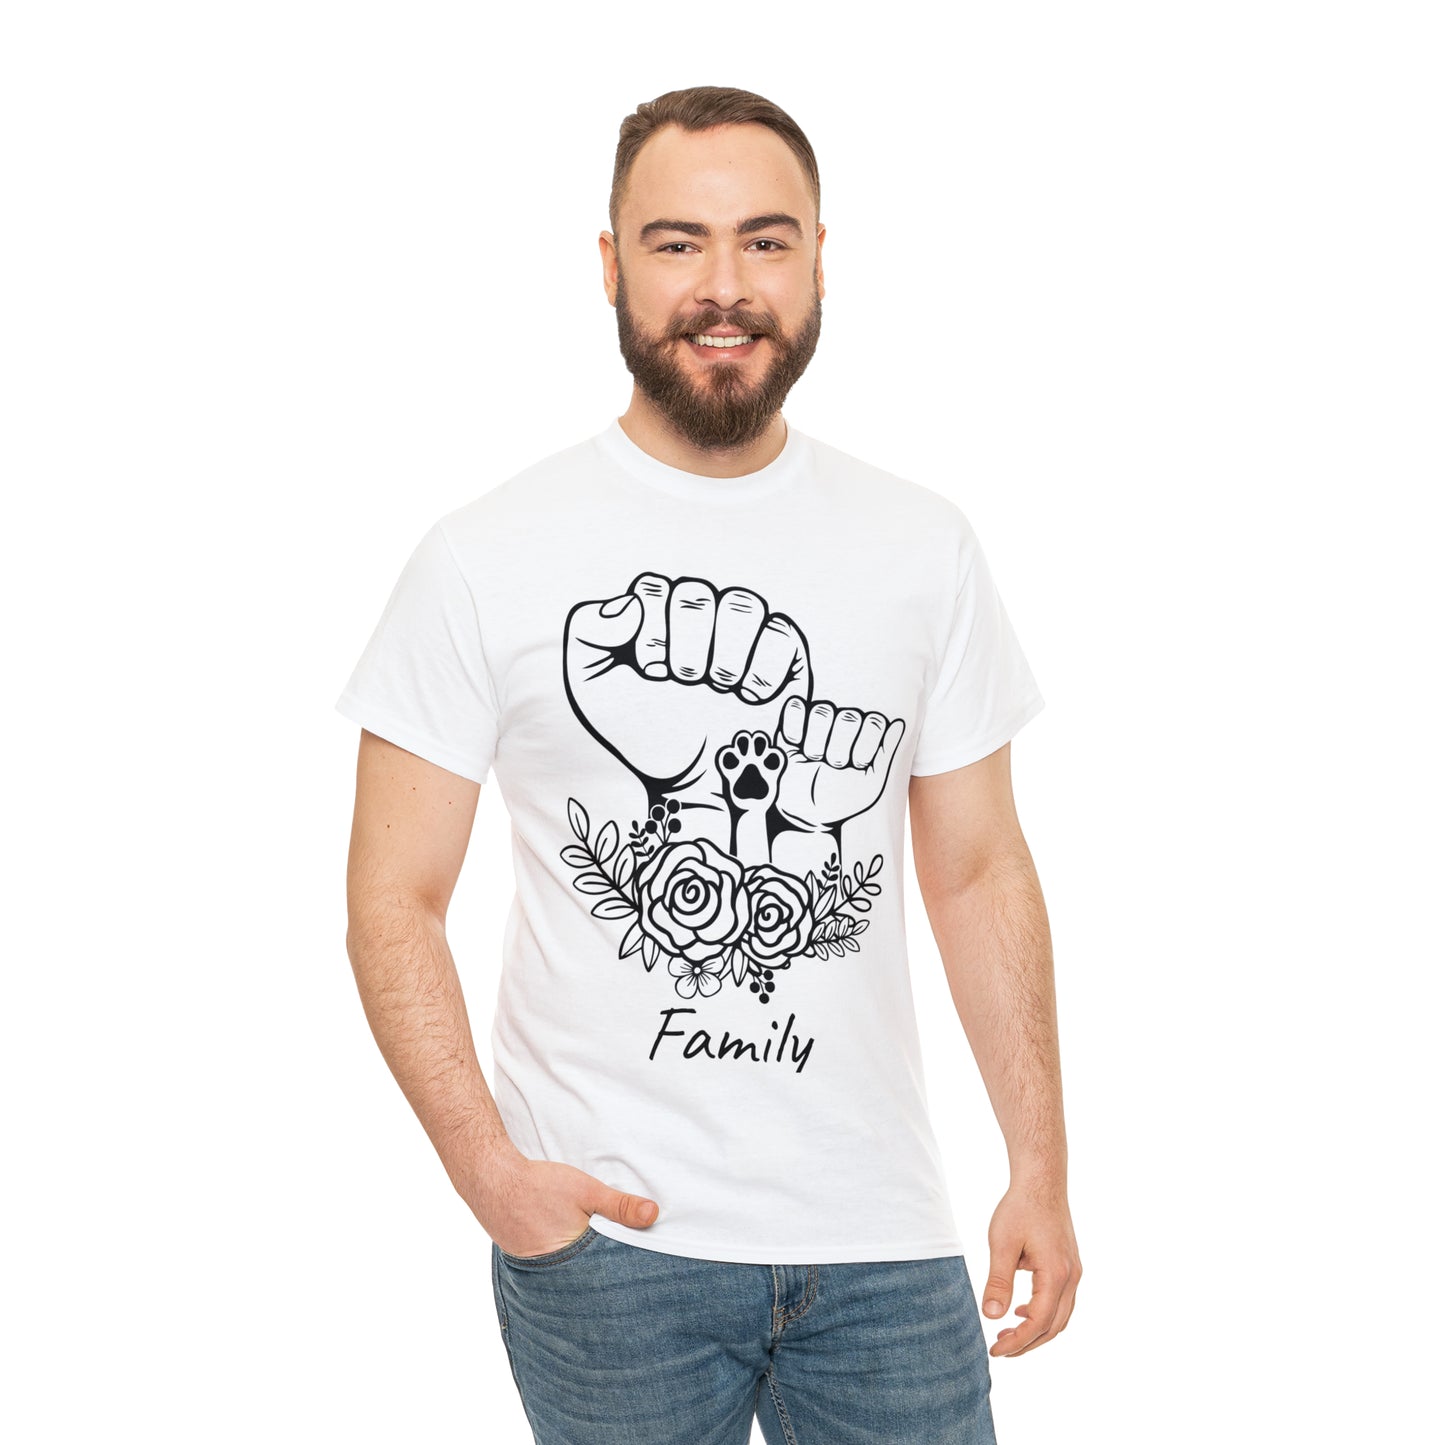 Family T Shirt